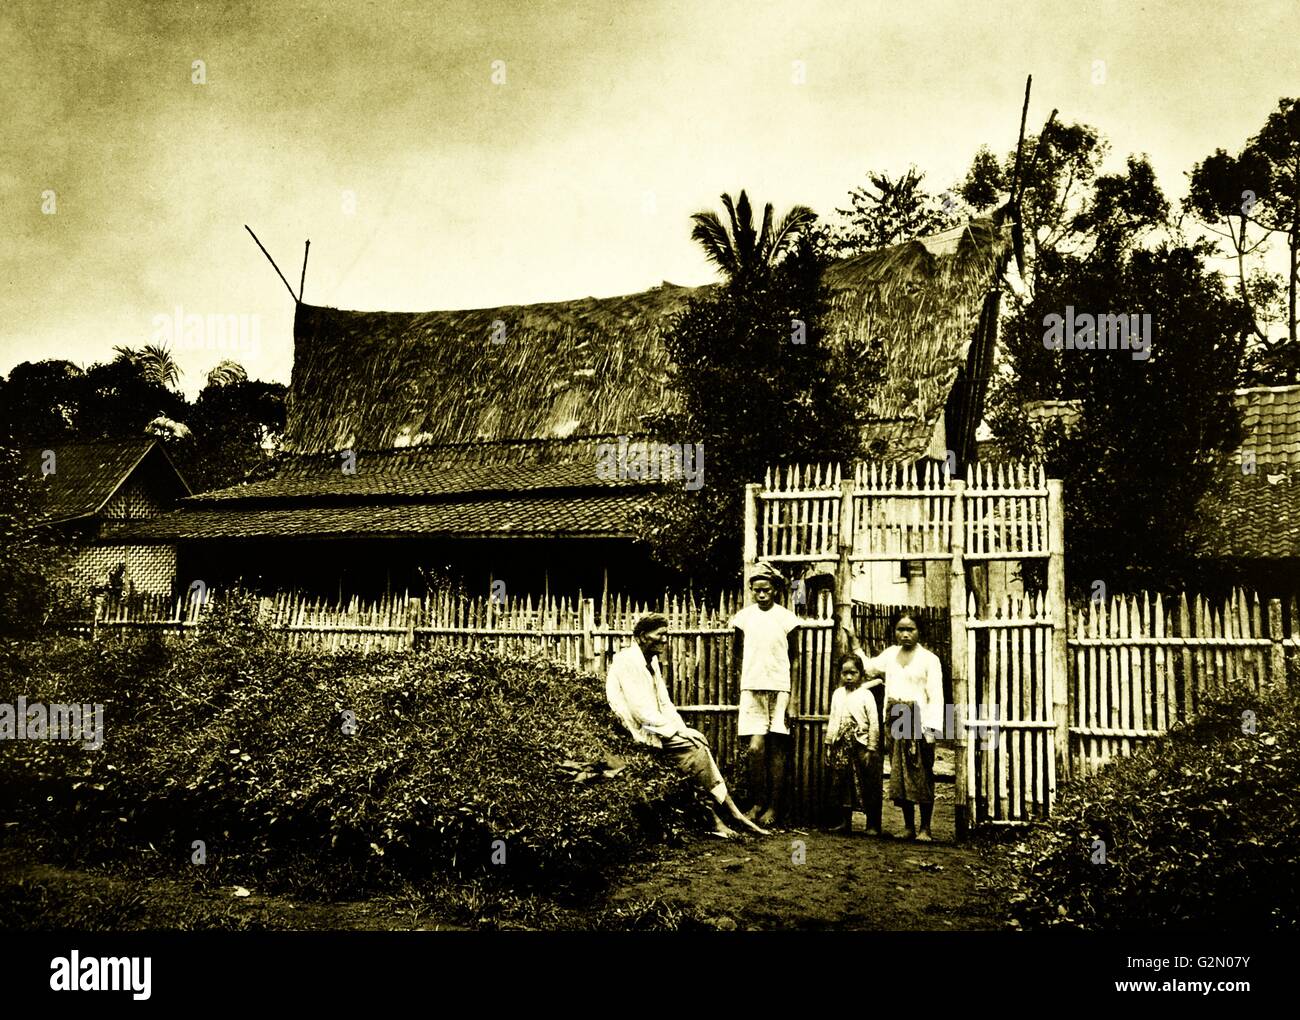 La photographie montre un groupe villageois se tenait devant un enclos village. Dutch East Indies, connu sous le nom de l'Indonésie moderne. Du c1935. Banque D'Images